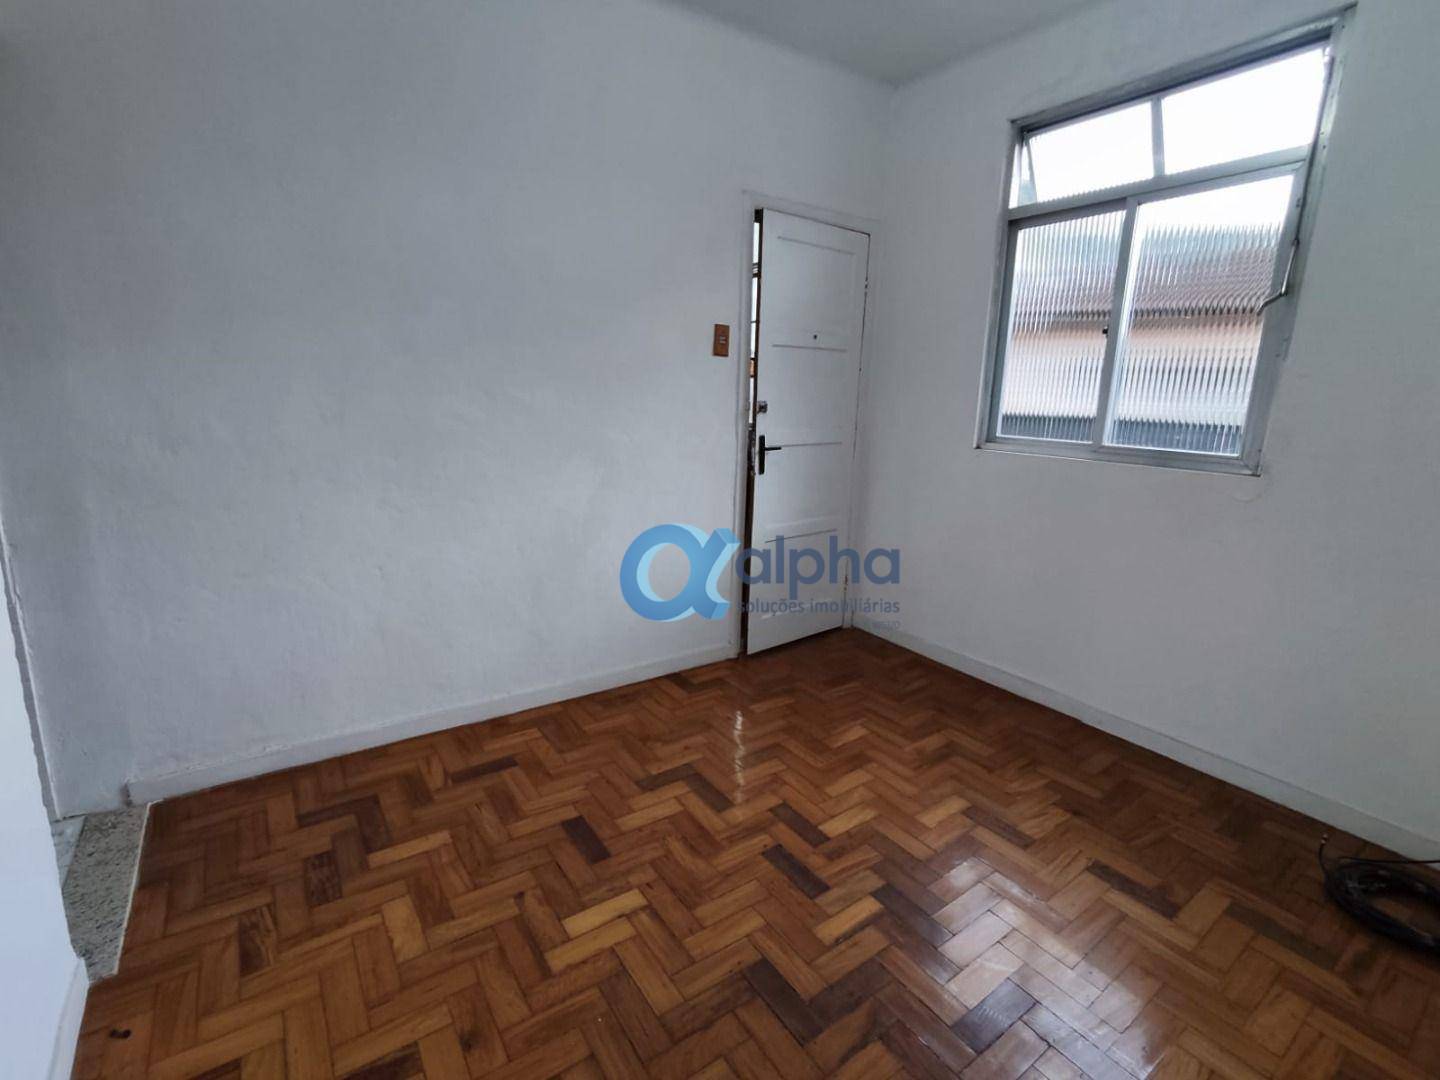 Apartamento para Alugar  à venda em Bingen, Petrópolis - RJ - Foto 5